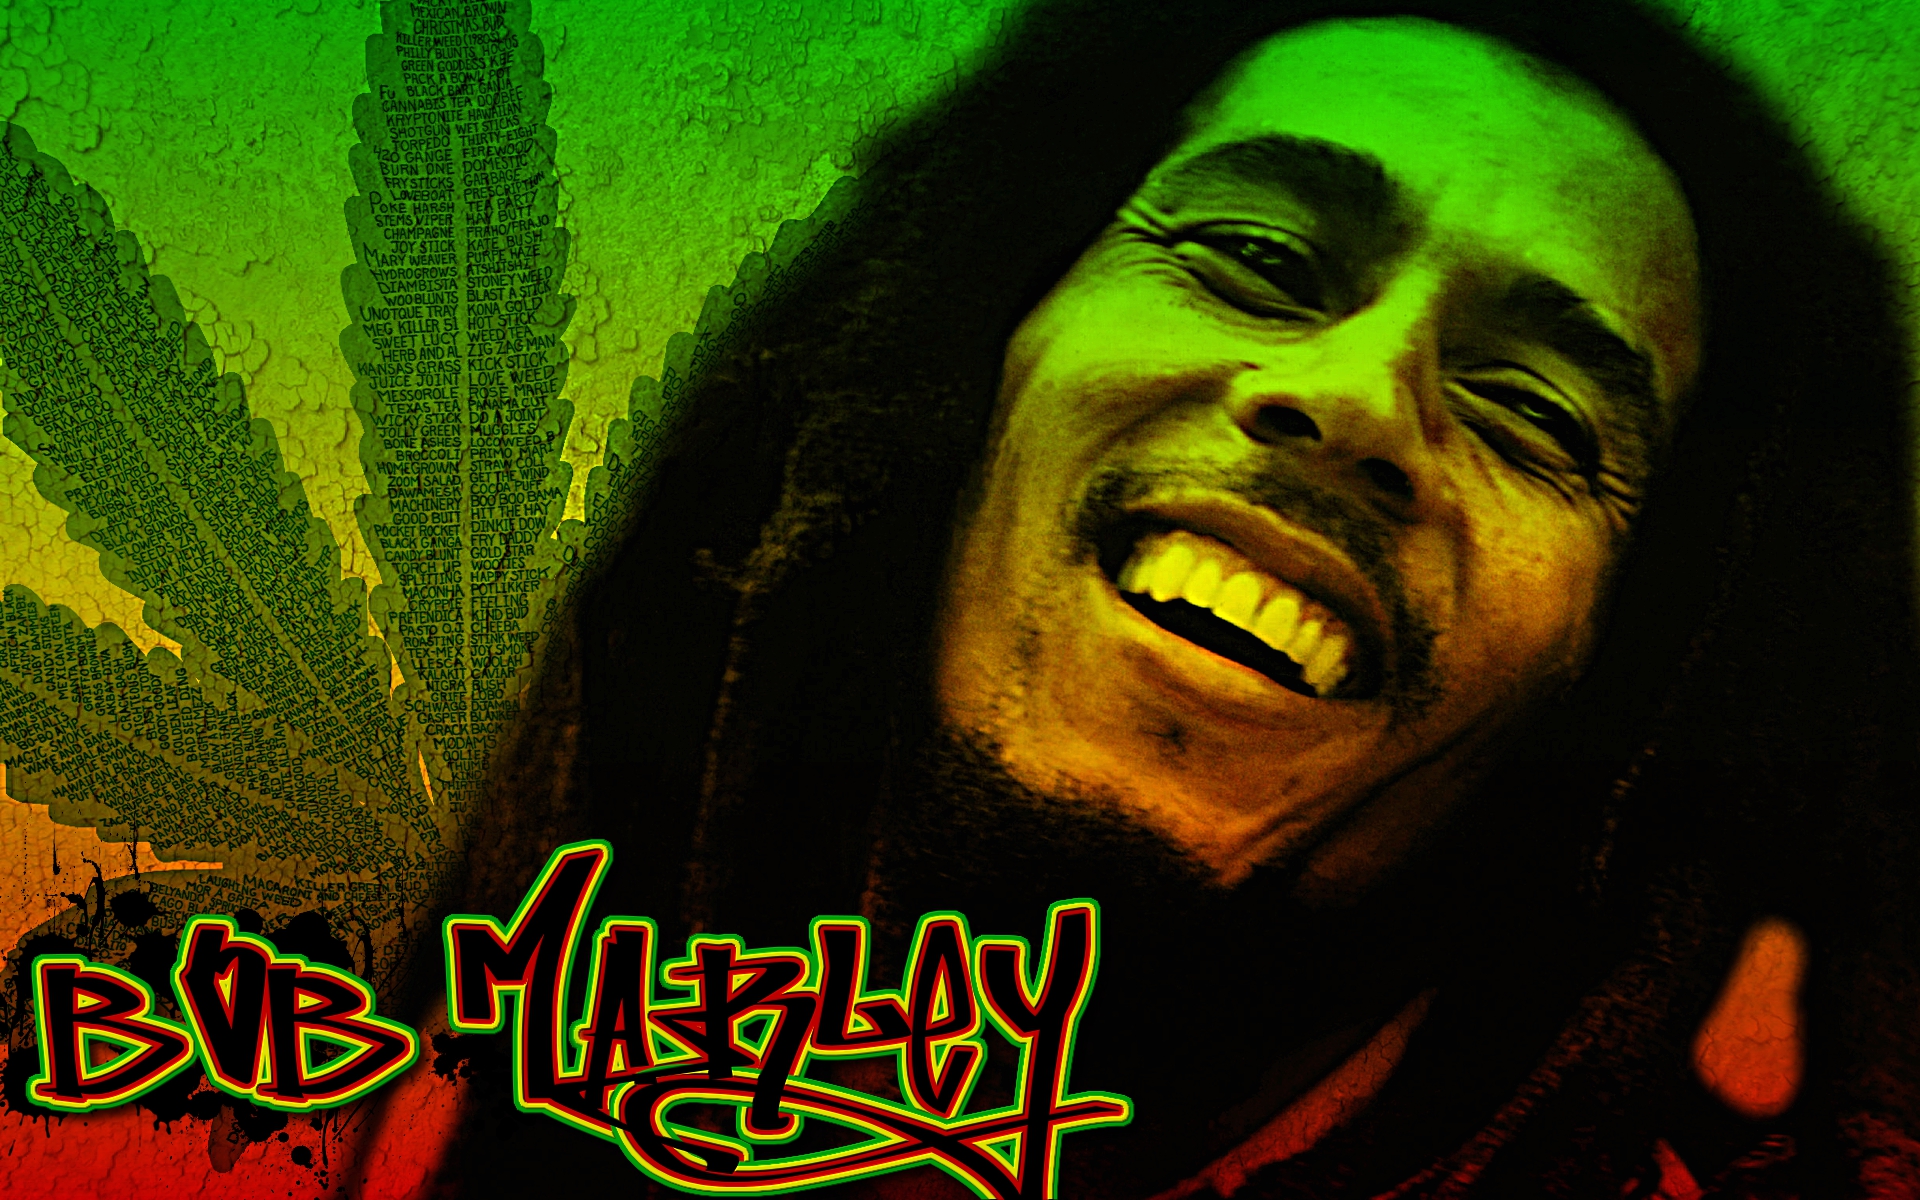 Lucky Dube E Bob Marley - 1920x1200 Wallpaper 